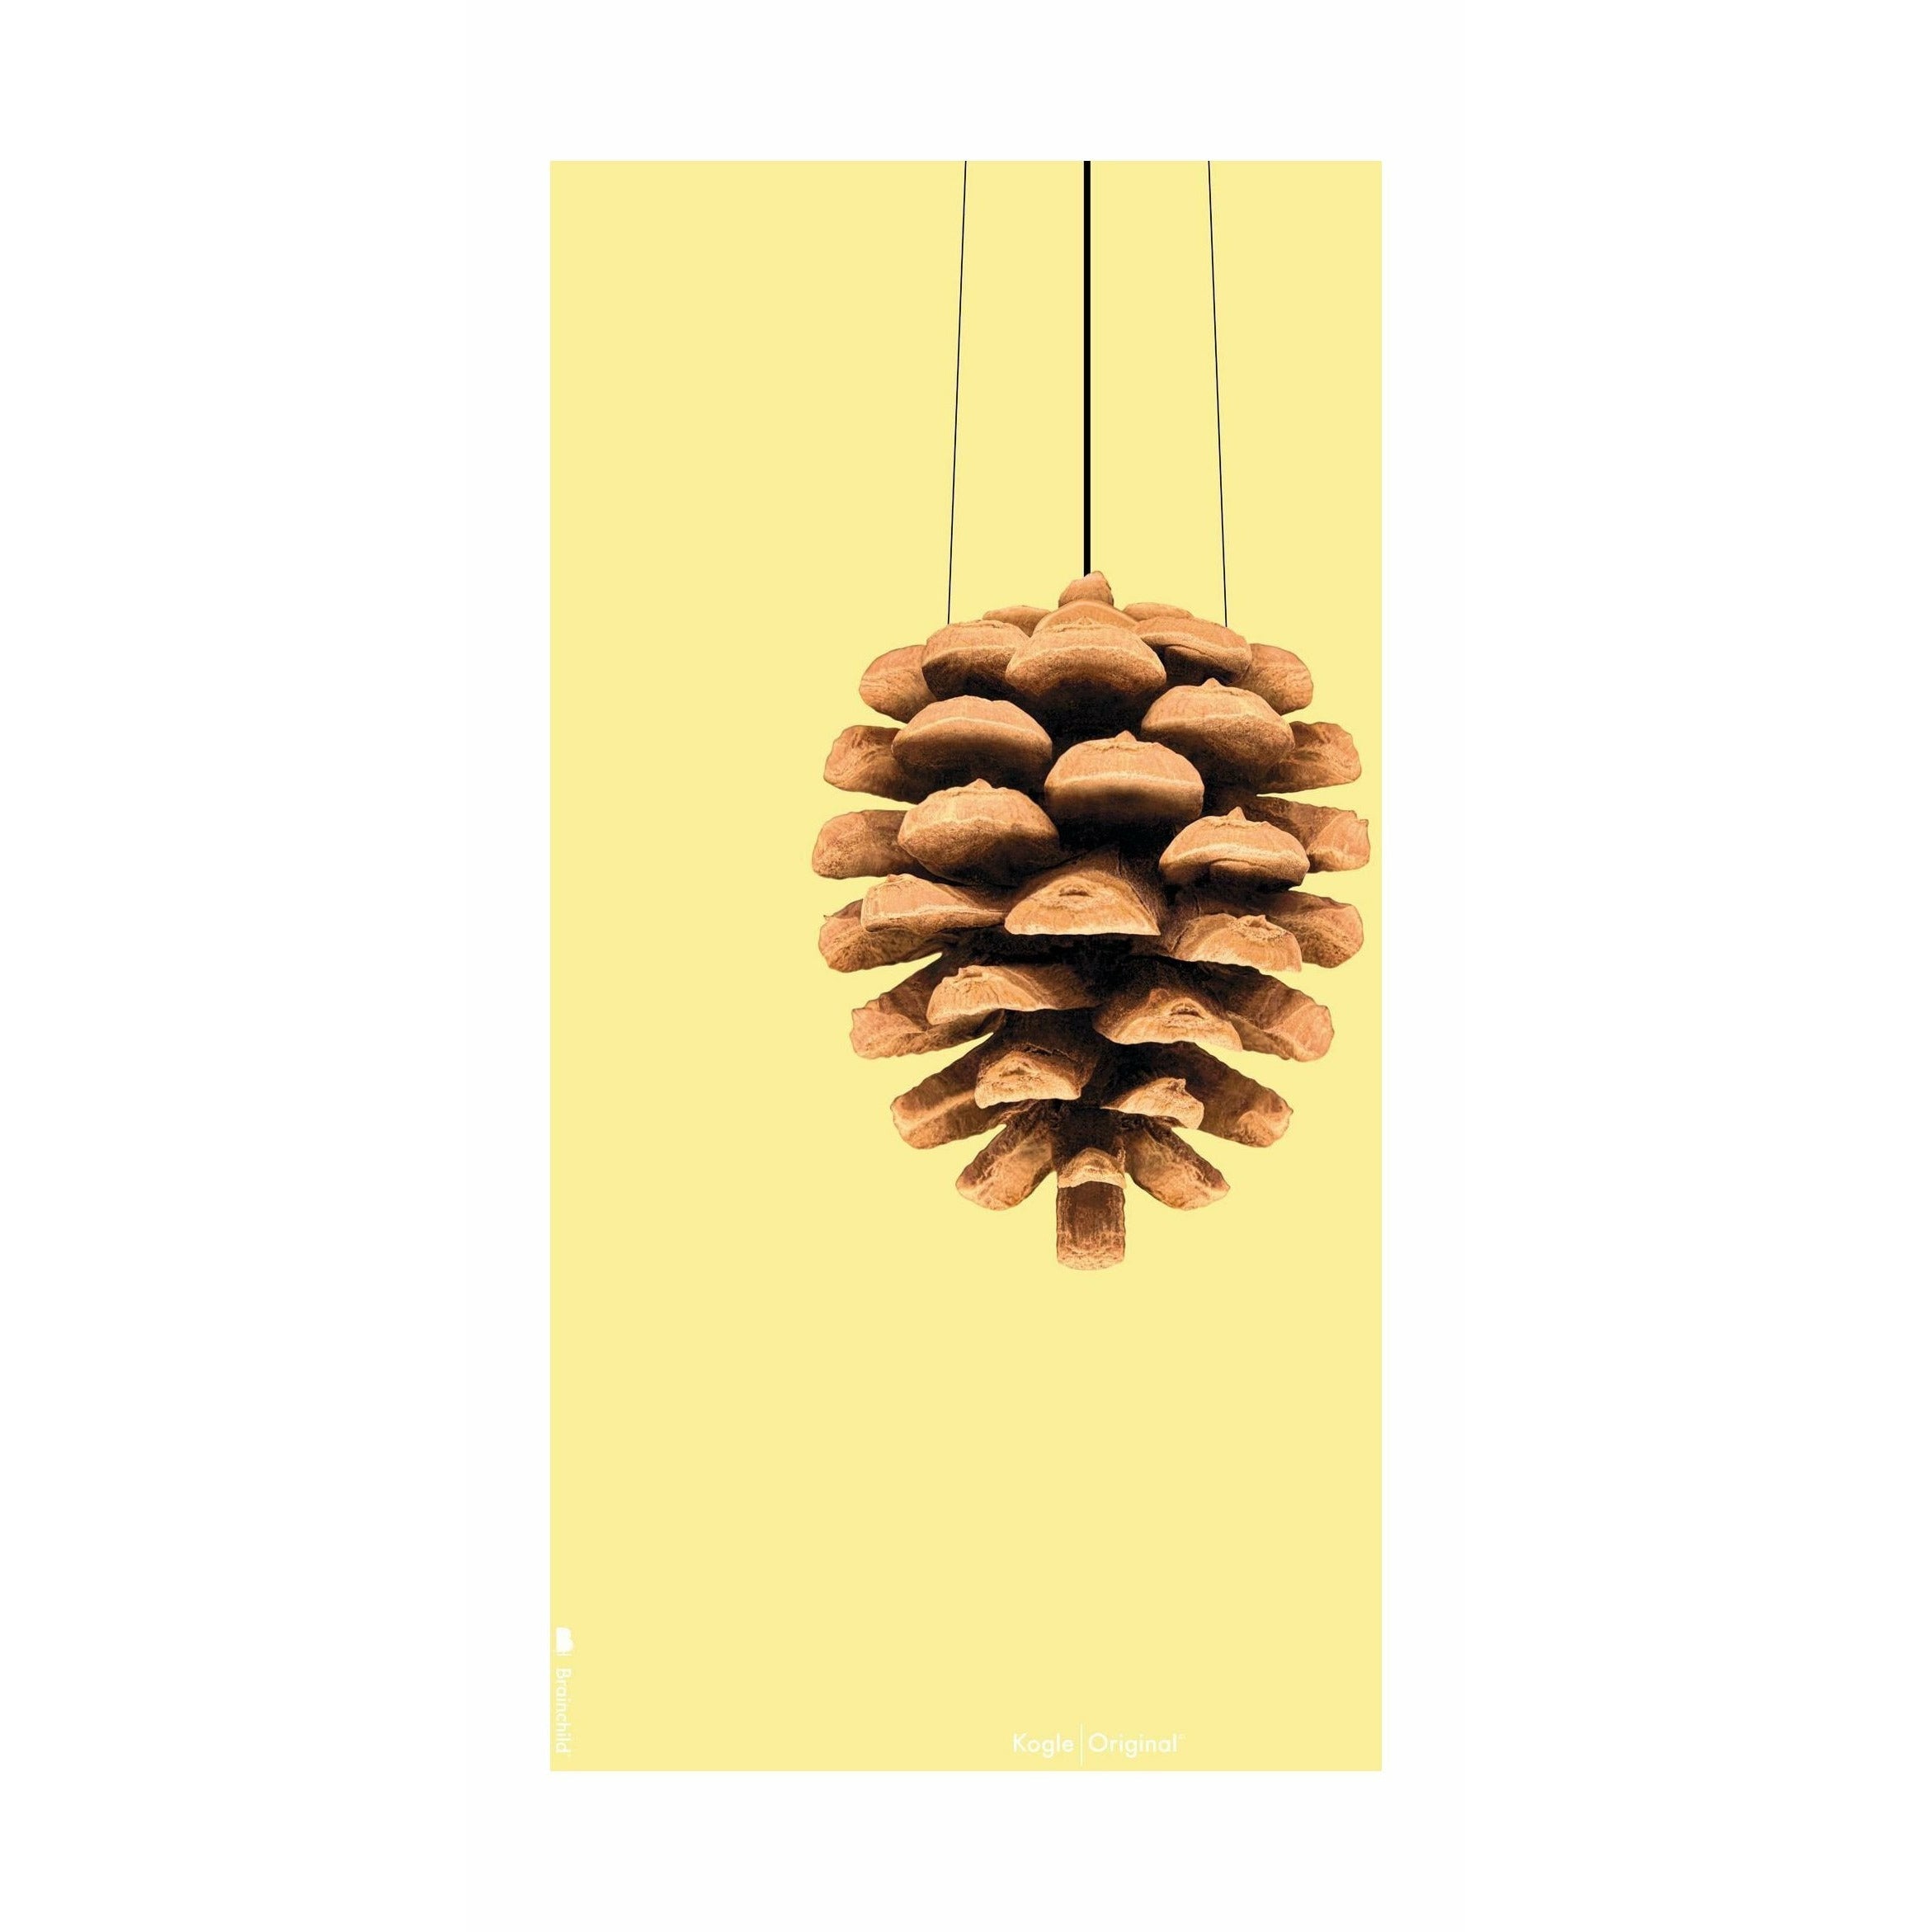 Brainchild Pine Cone Classic Poster ohne Rahmen 70 X100 Cm, gelber Hintergrund